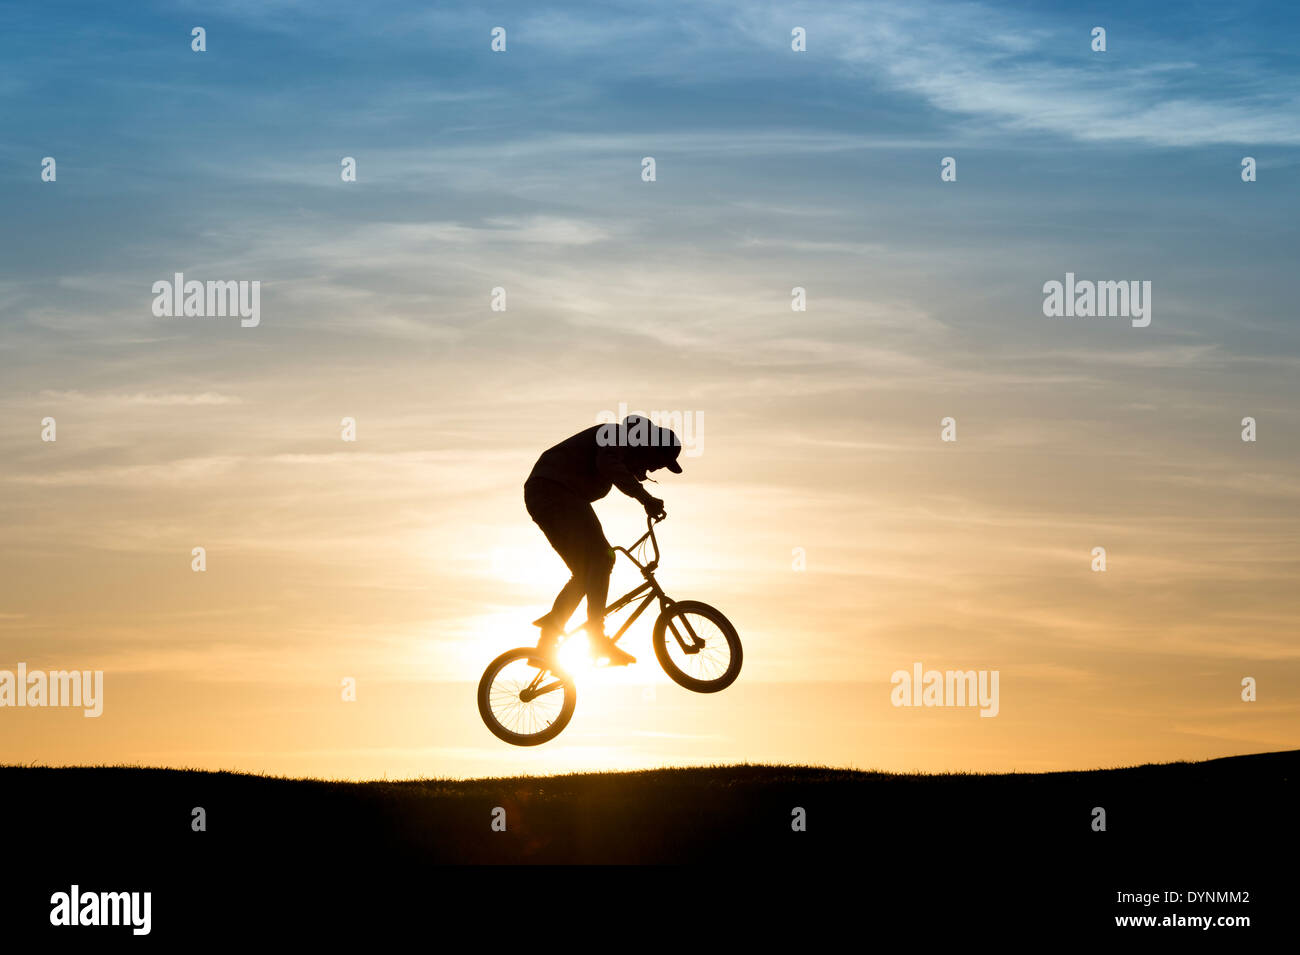 Jeune homme sur son vélo BMX sautant en l'air. Silhouette Banque D'Images